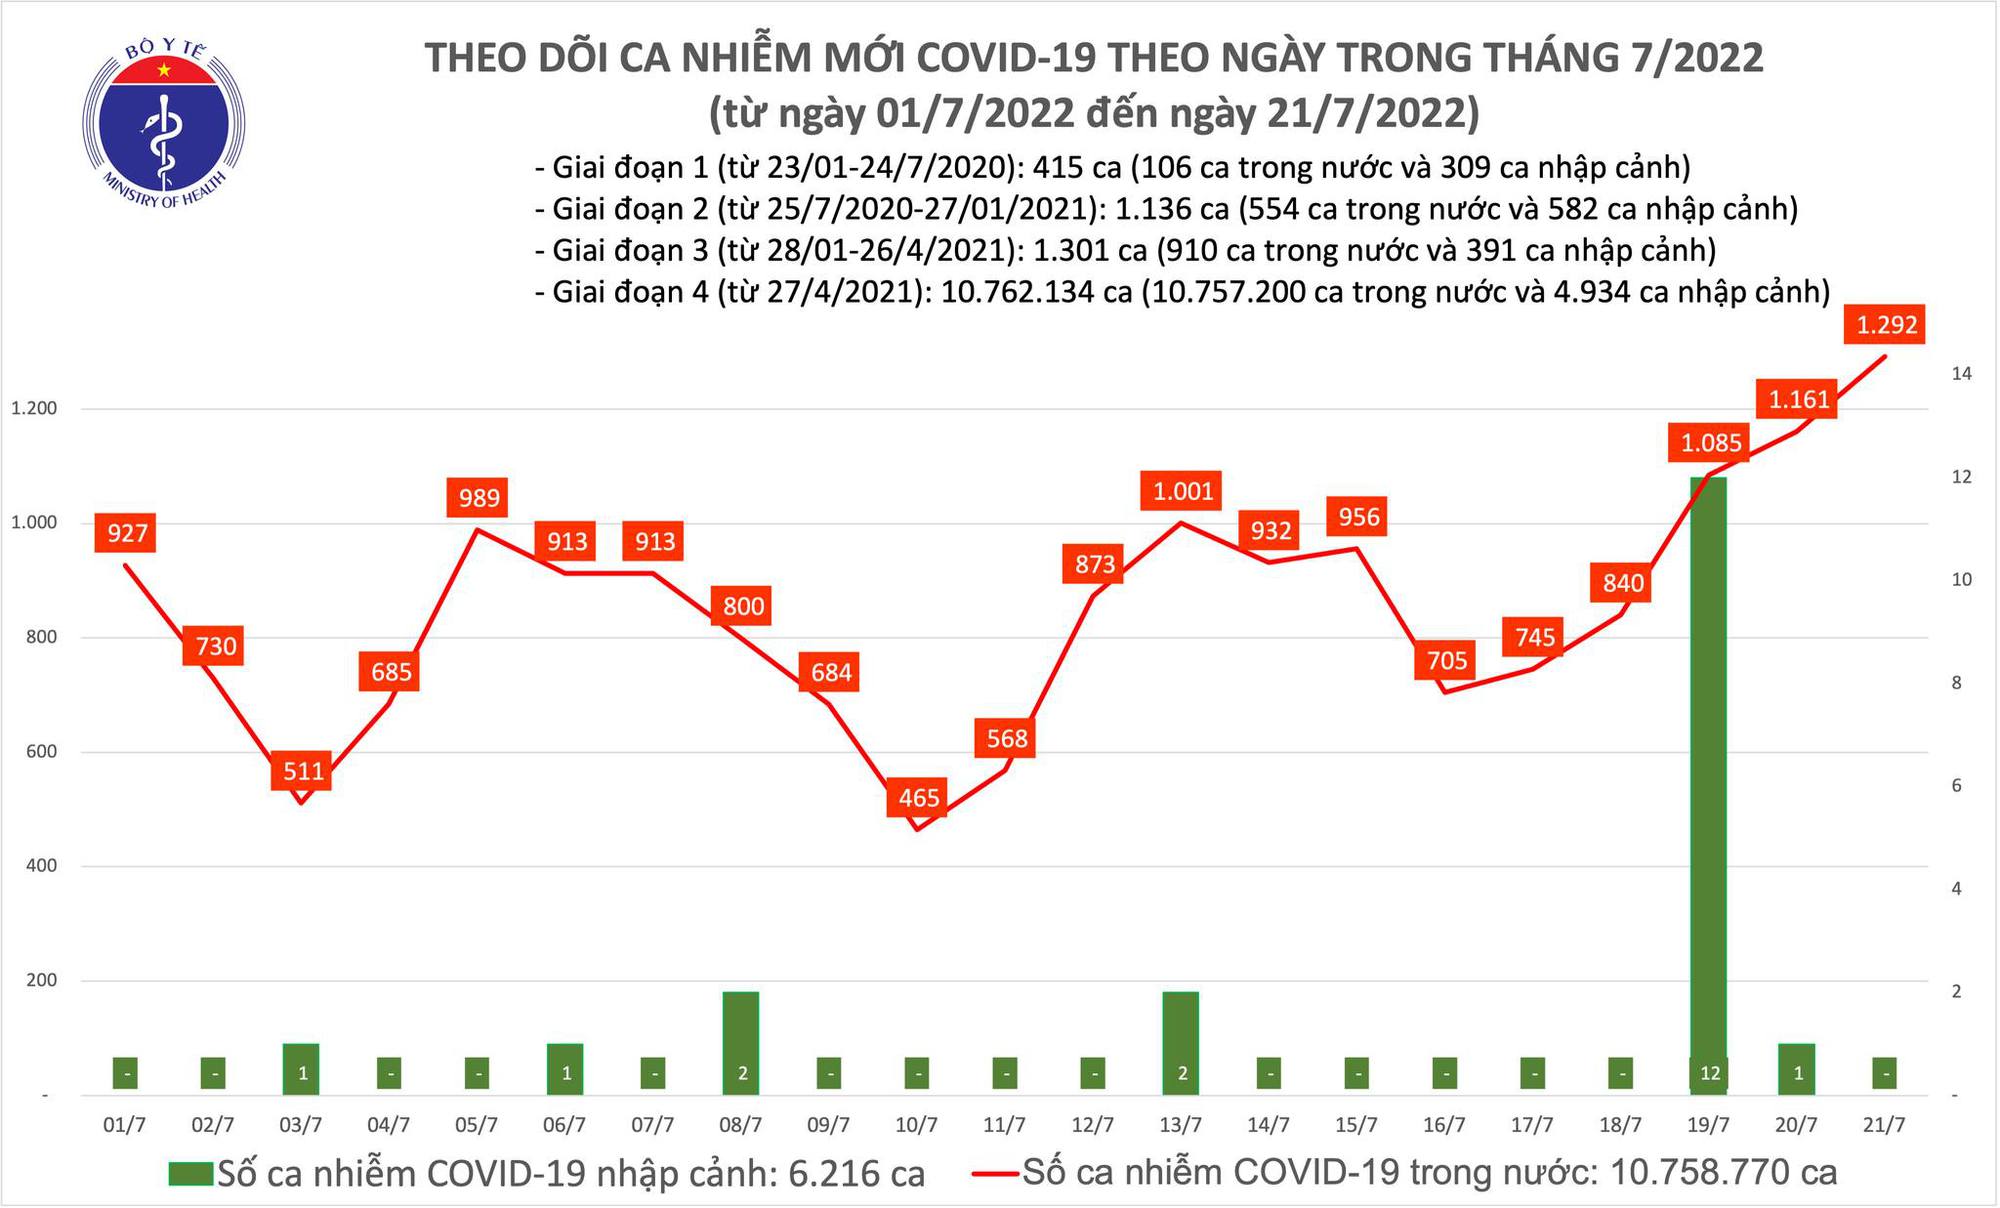 Ngày 21/7: Có gần 1.300 ca COVID-19 mới, cao nhất trong hơn 1,5 tháng qua